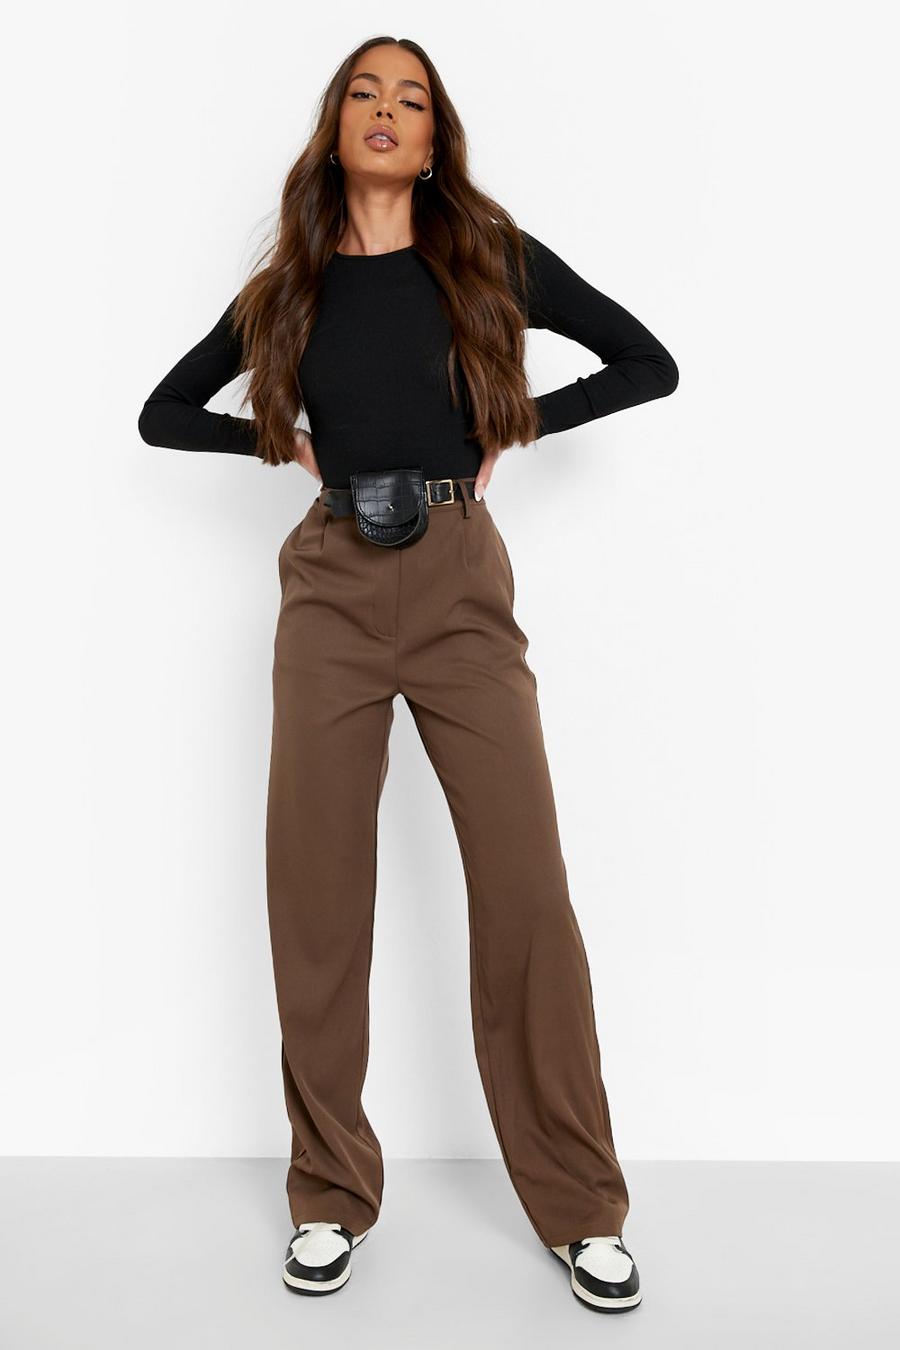 Tan brown Belt Bag Woven Casual Trouser